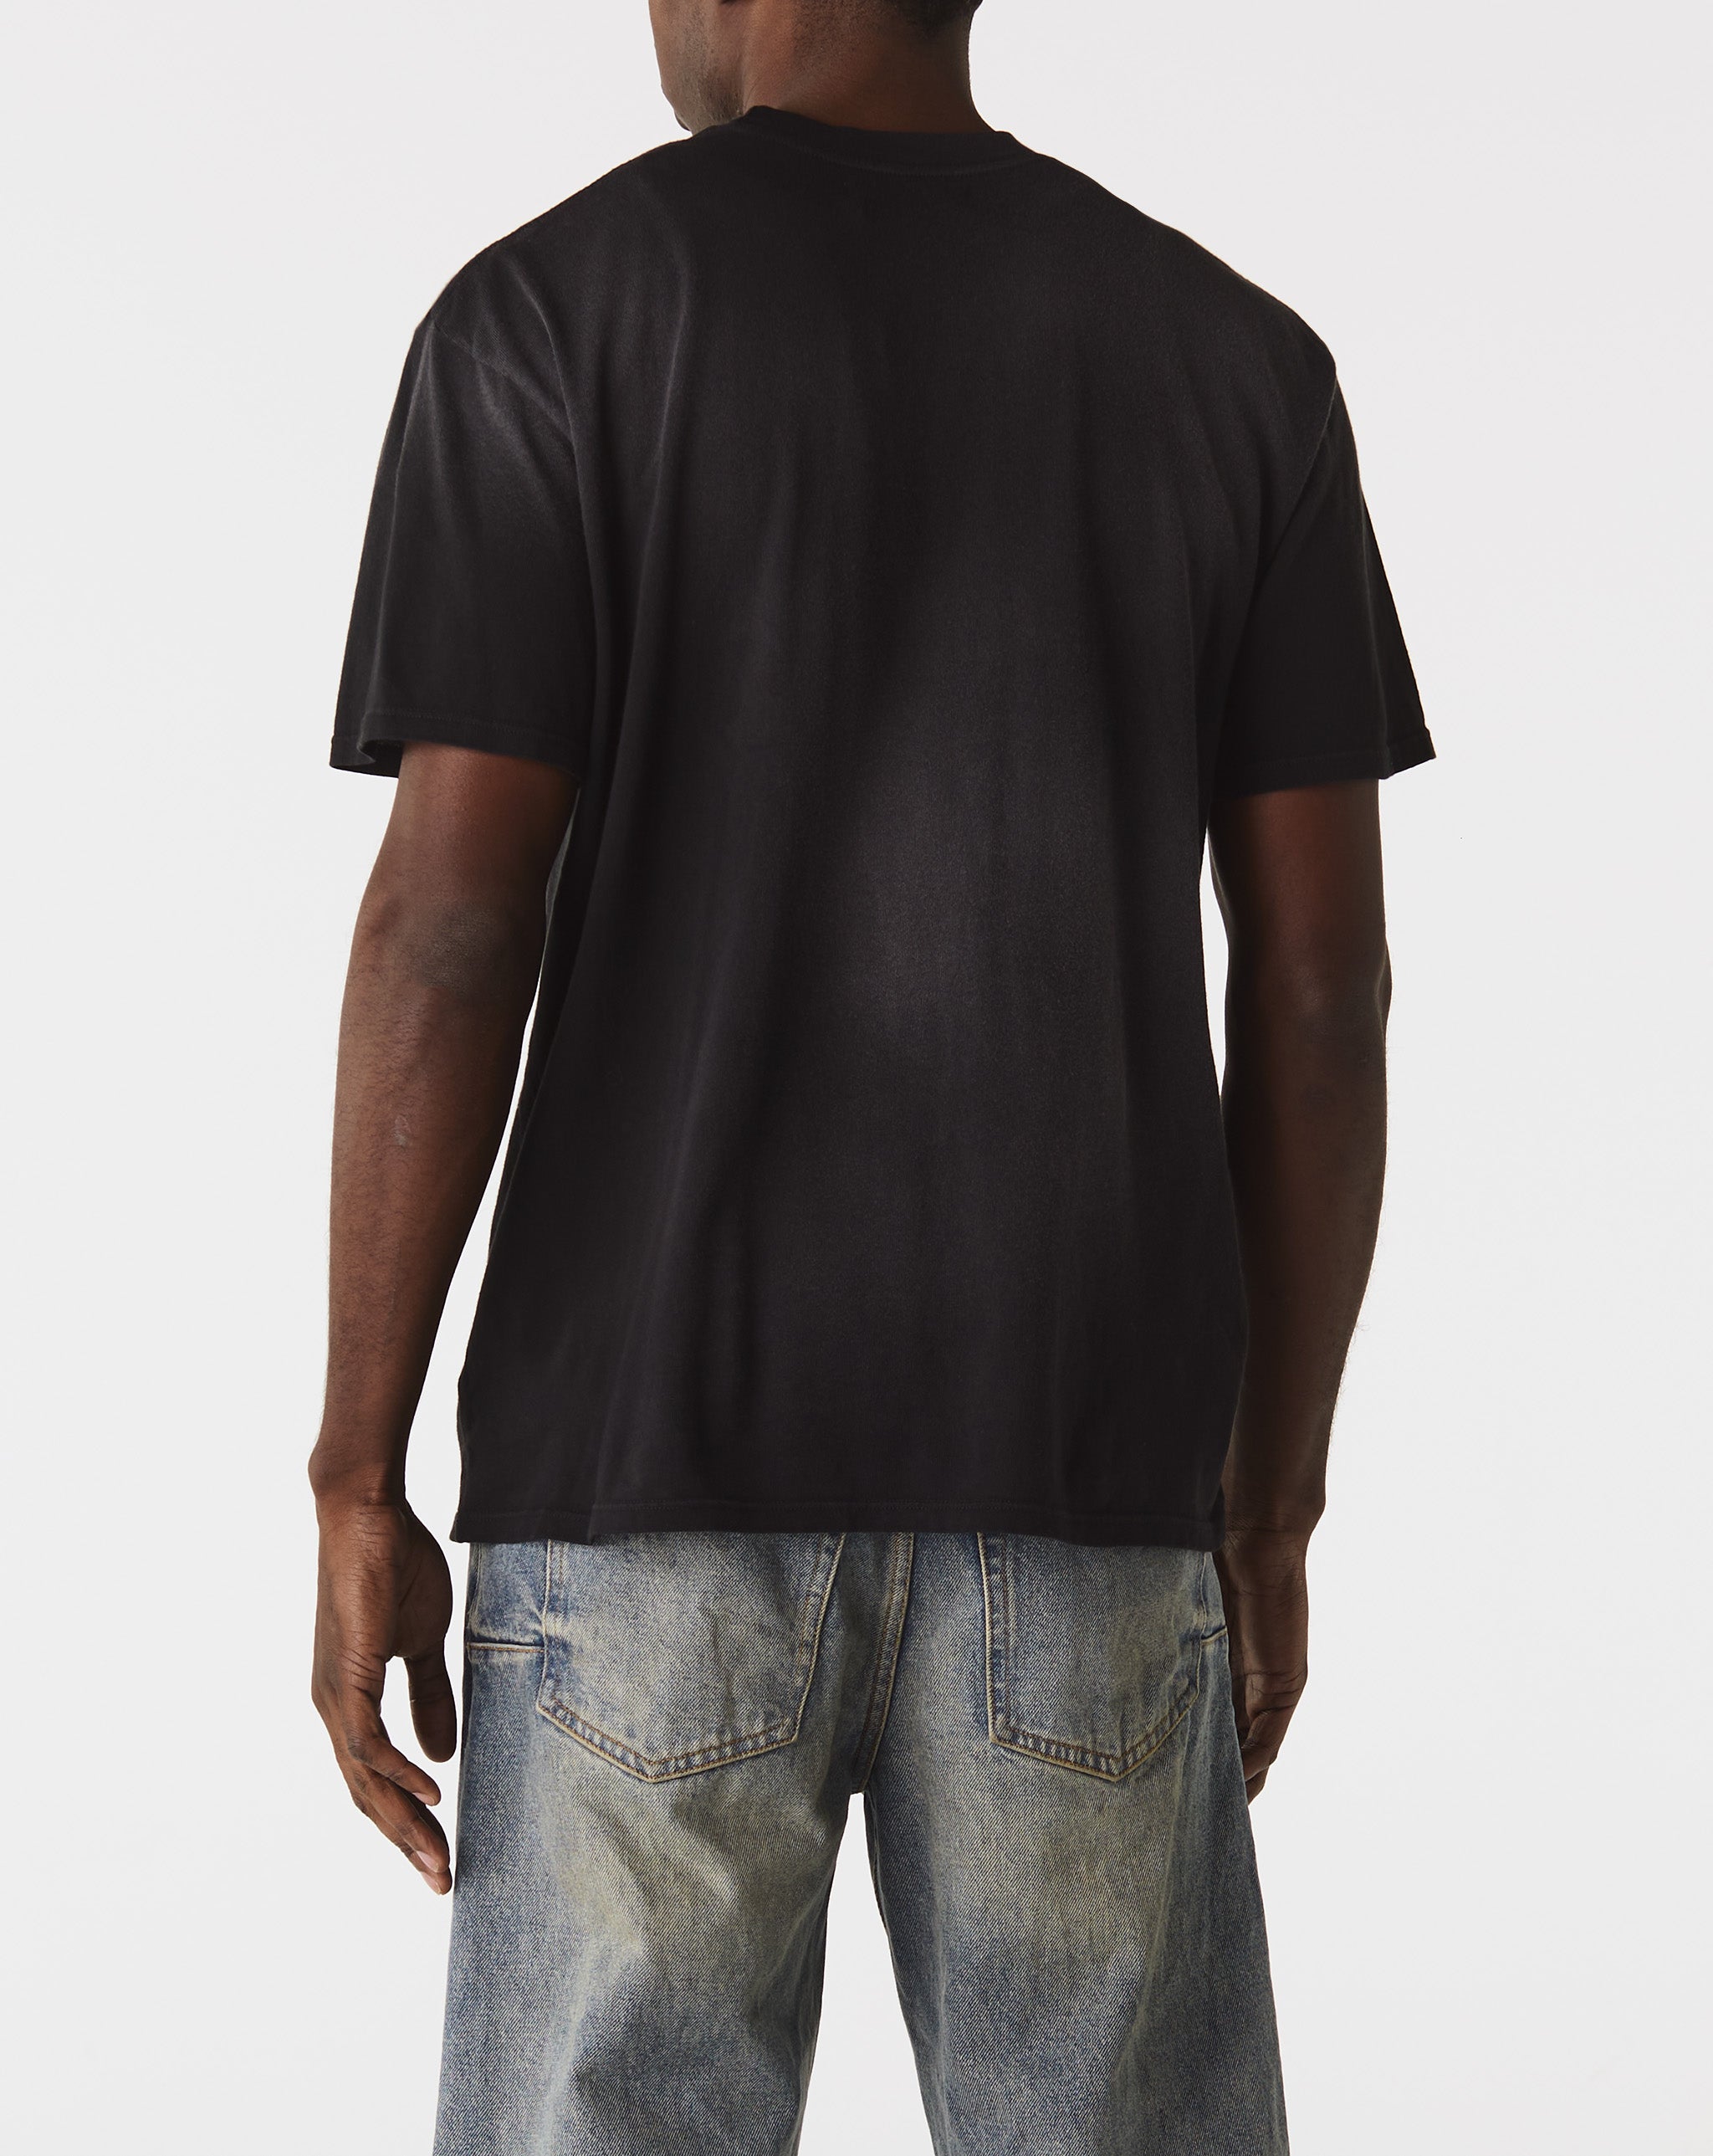 Nahmias Summerland Collegiate T-Shirt  - Cheap Urlfreeze Jordan outlet